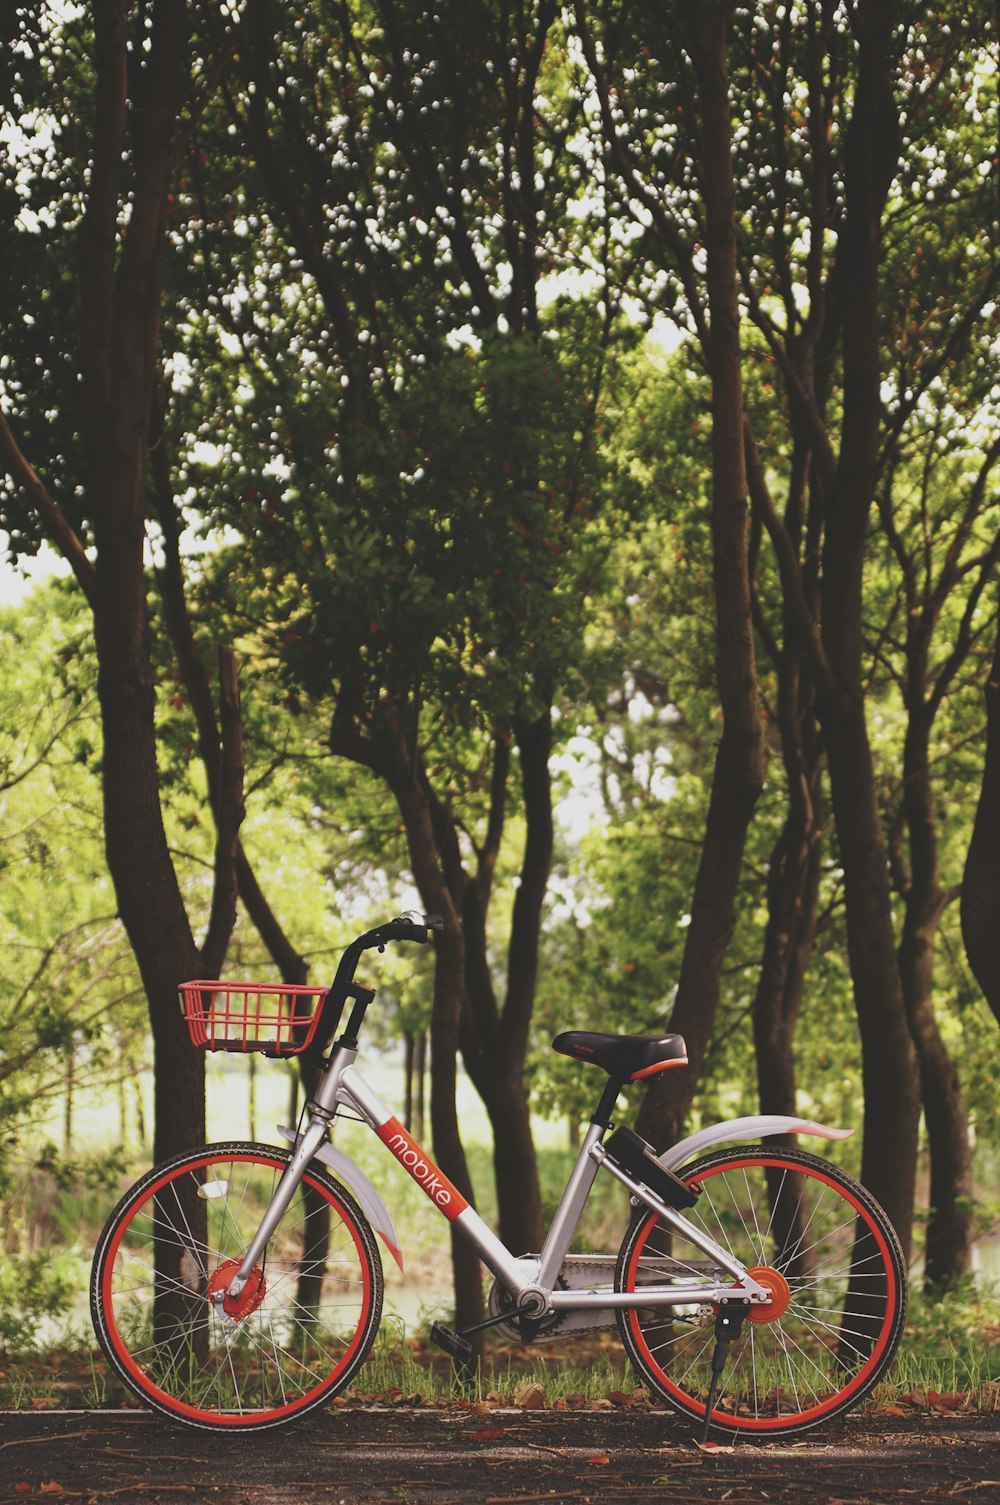 Photographie d’un vélo garé près d’arbres